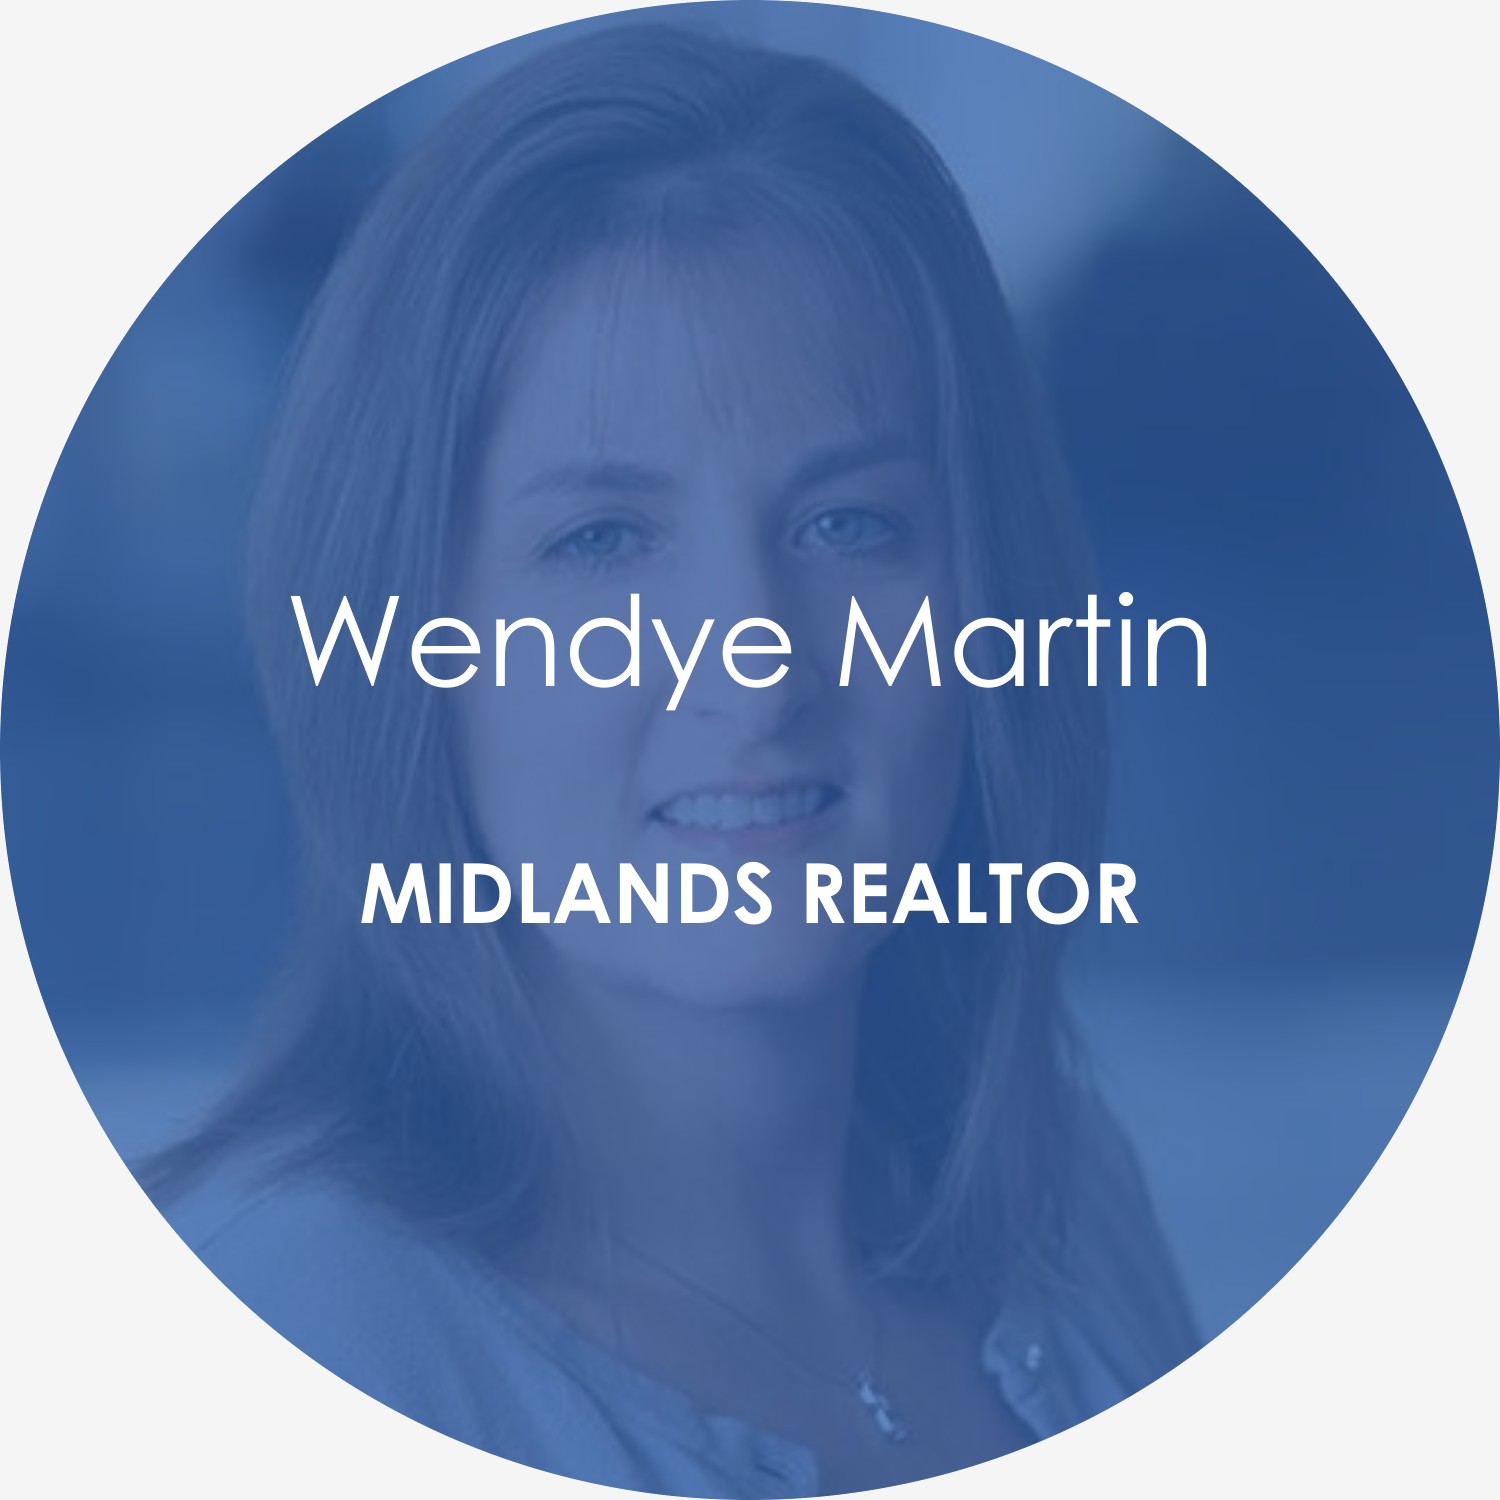 Wendye Martin – Midlands realtor